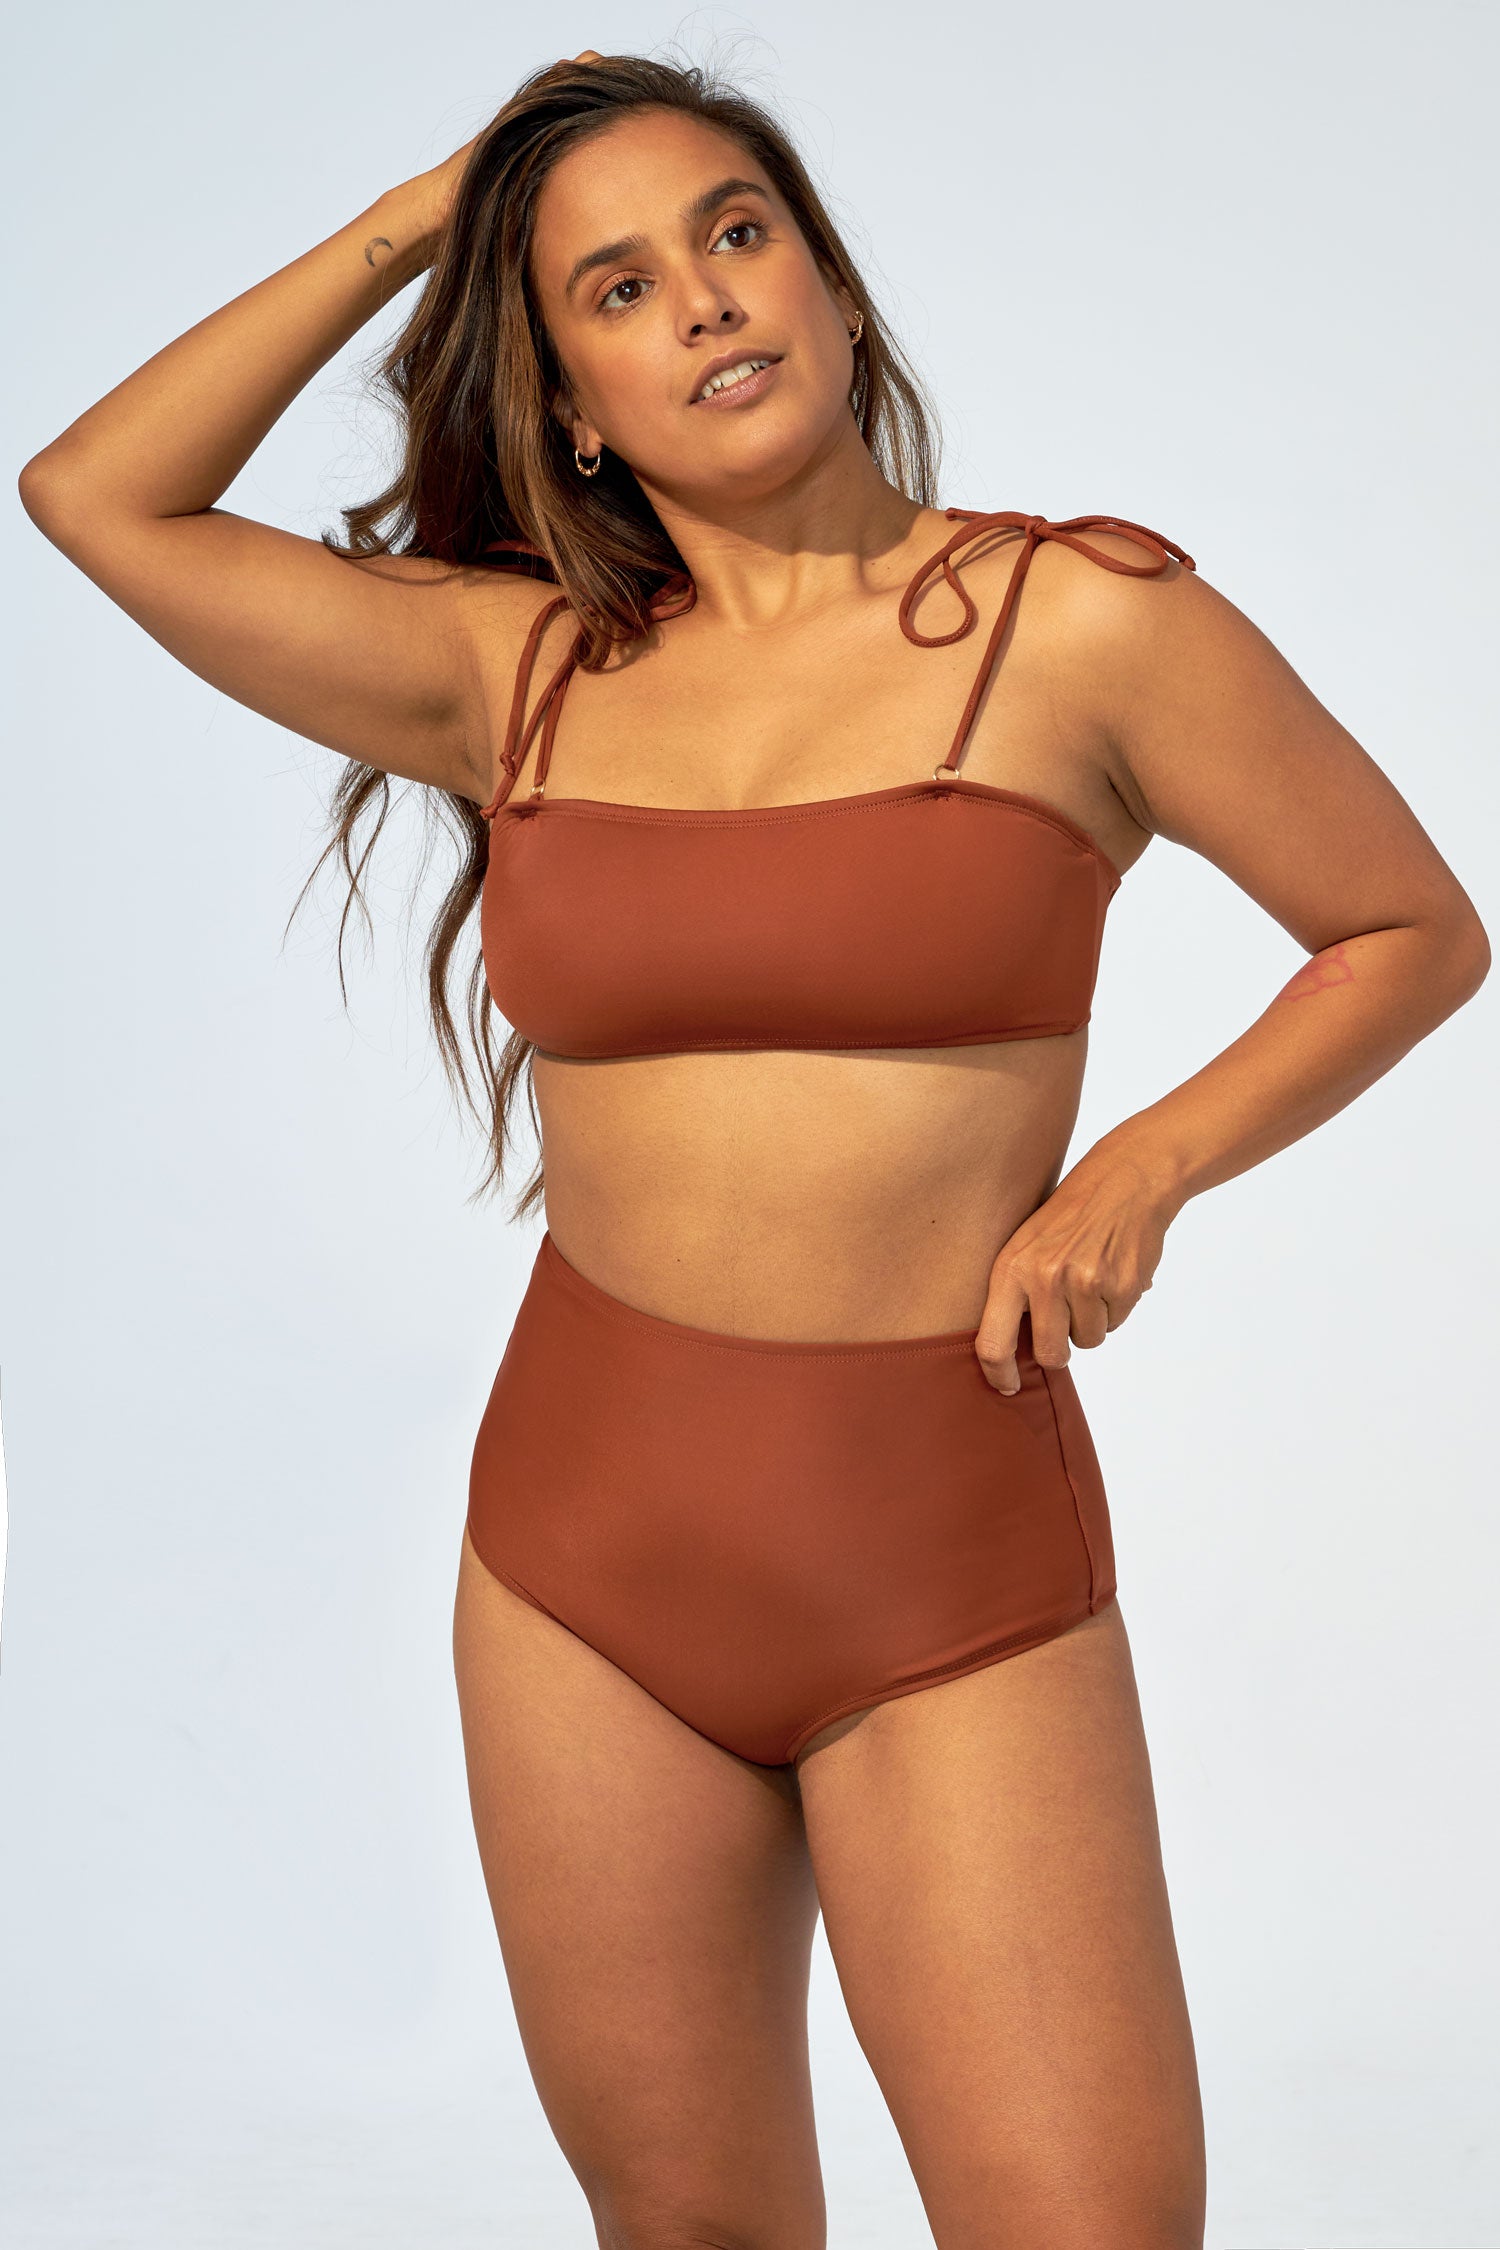 MANILLA - Strapless bikini top in Chocolate brown - Selfish swimwear Top